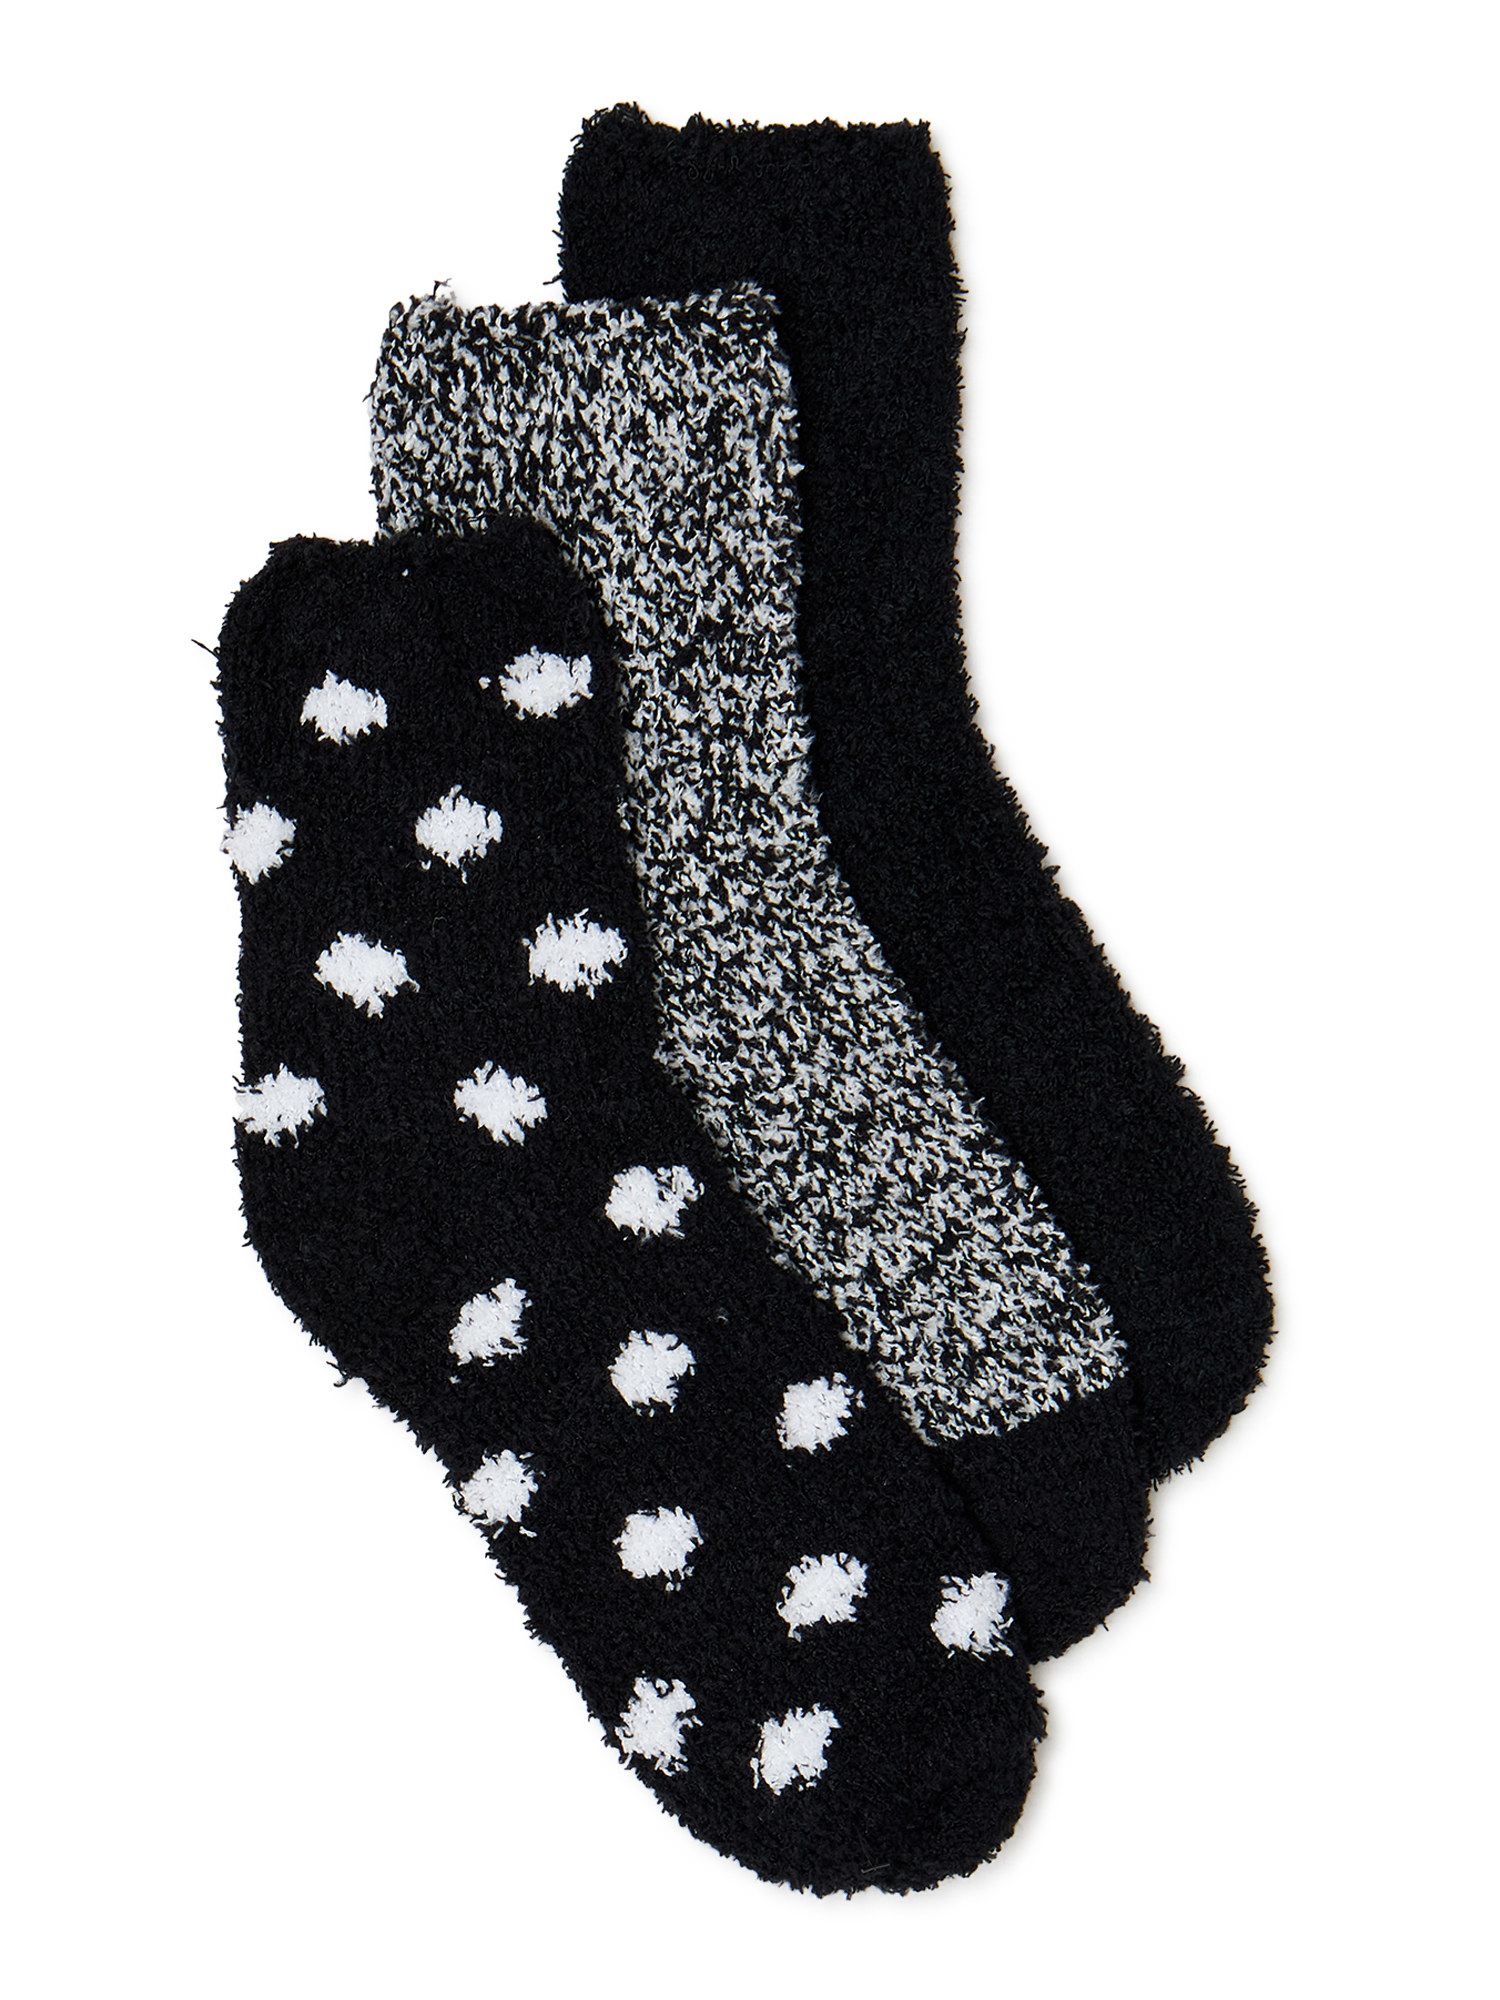 Three pairs of fuzzy black and white socks